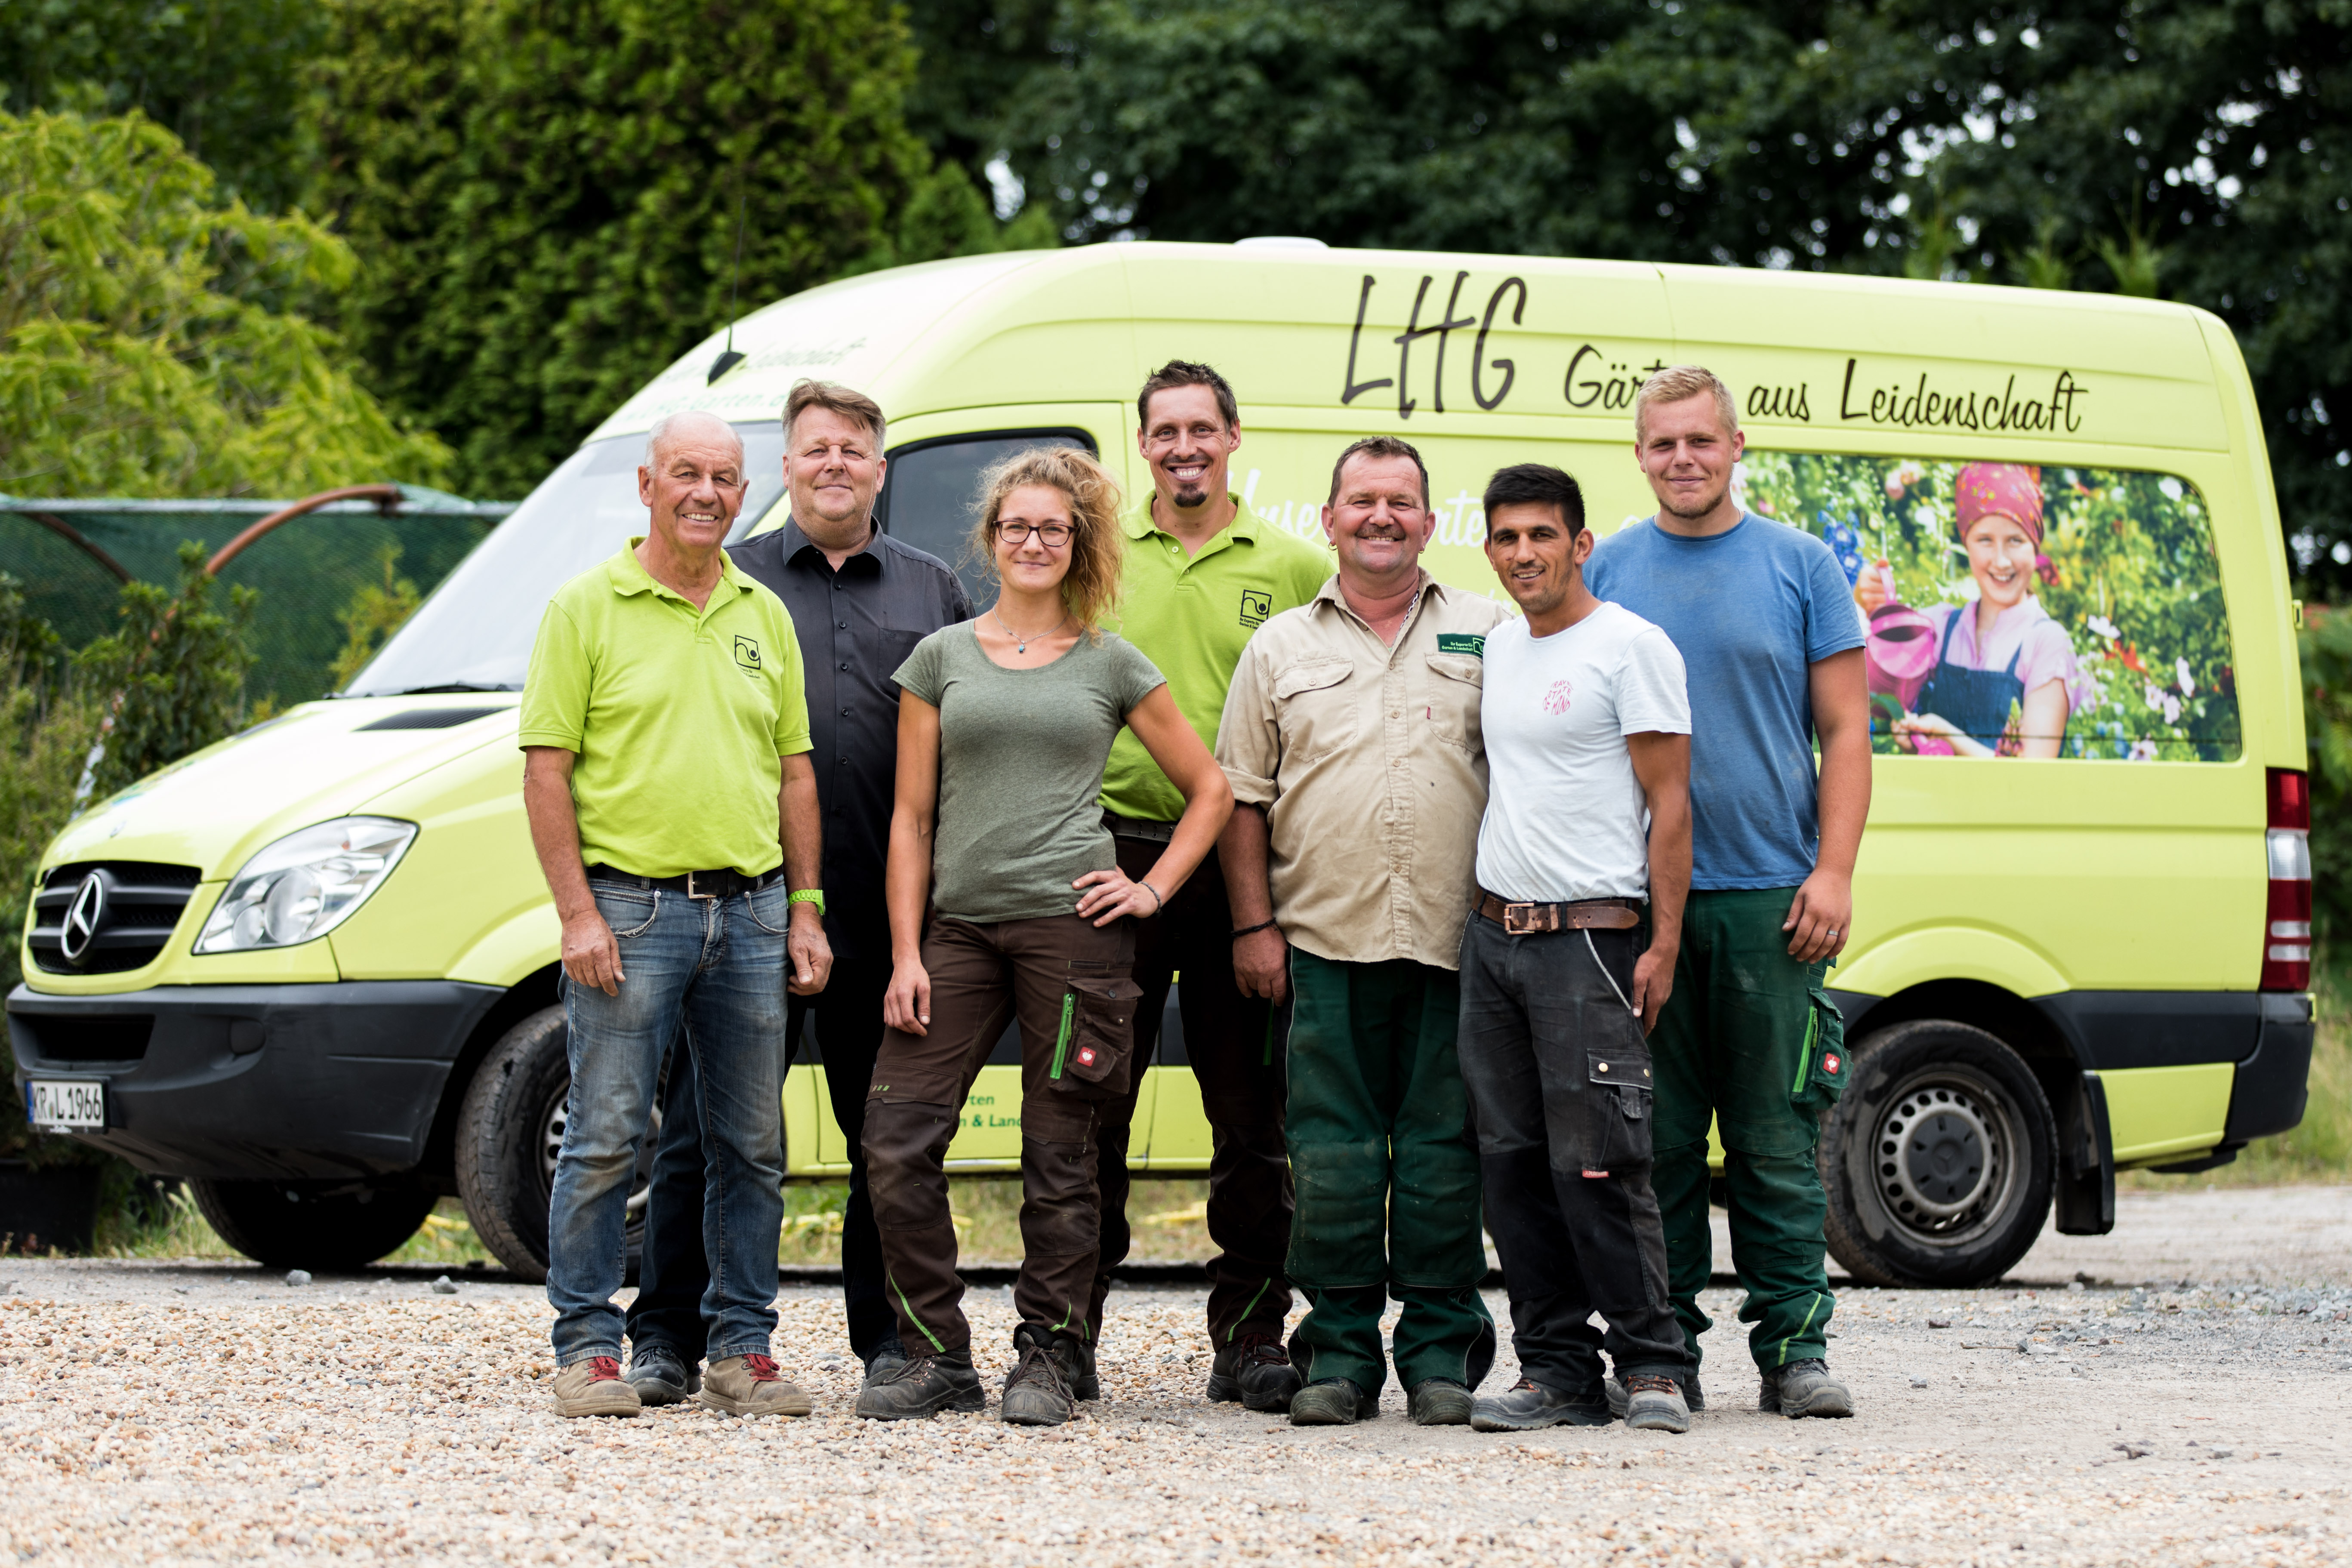 LHG Garten GmbH Garten und Landschaftsbau Team